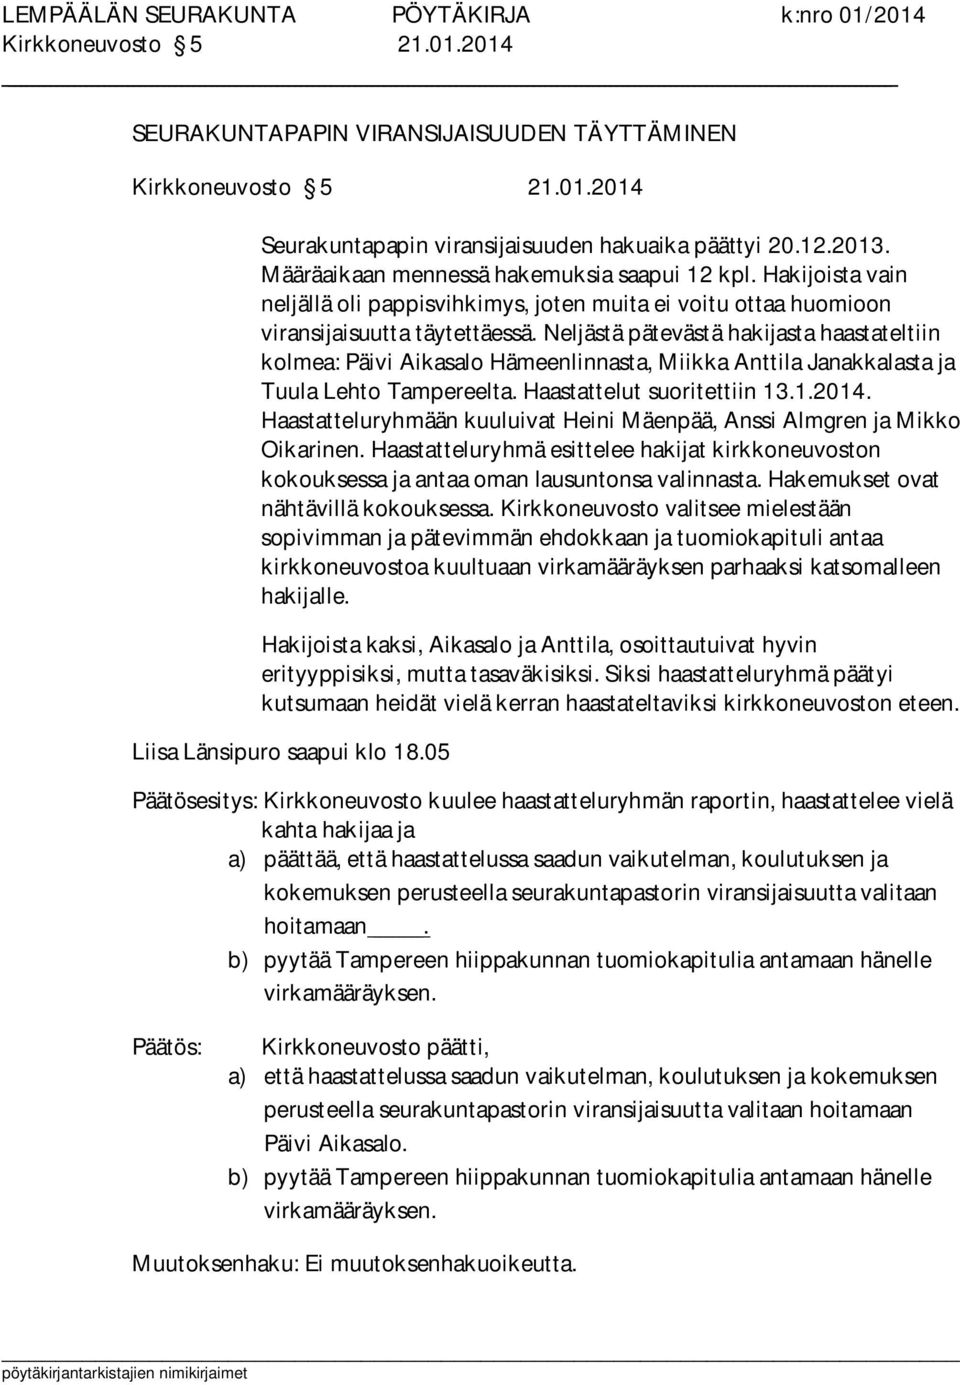 Neljästä pätevästä hakijasta haastateltiin kolmea: Päivi Aikasalo Hämeenlinnasta, Miikka Anttila Janakkalasta ja Tuula Lehto Tampereelta. Haastattelut suoritettiin 13.1.2014.